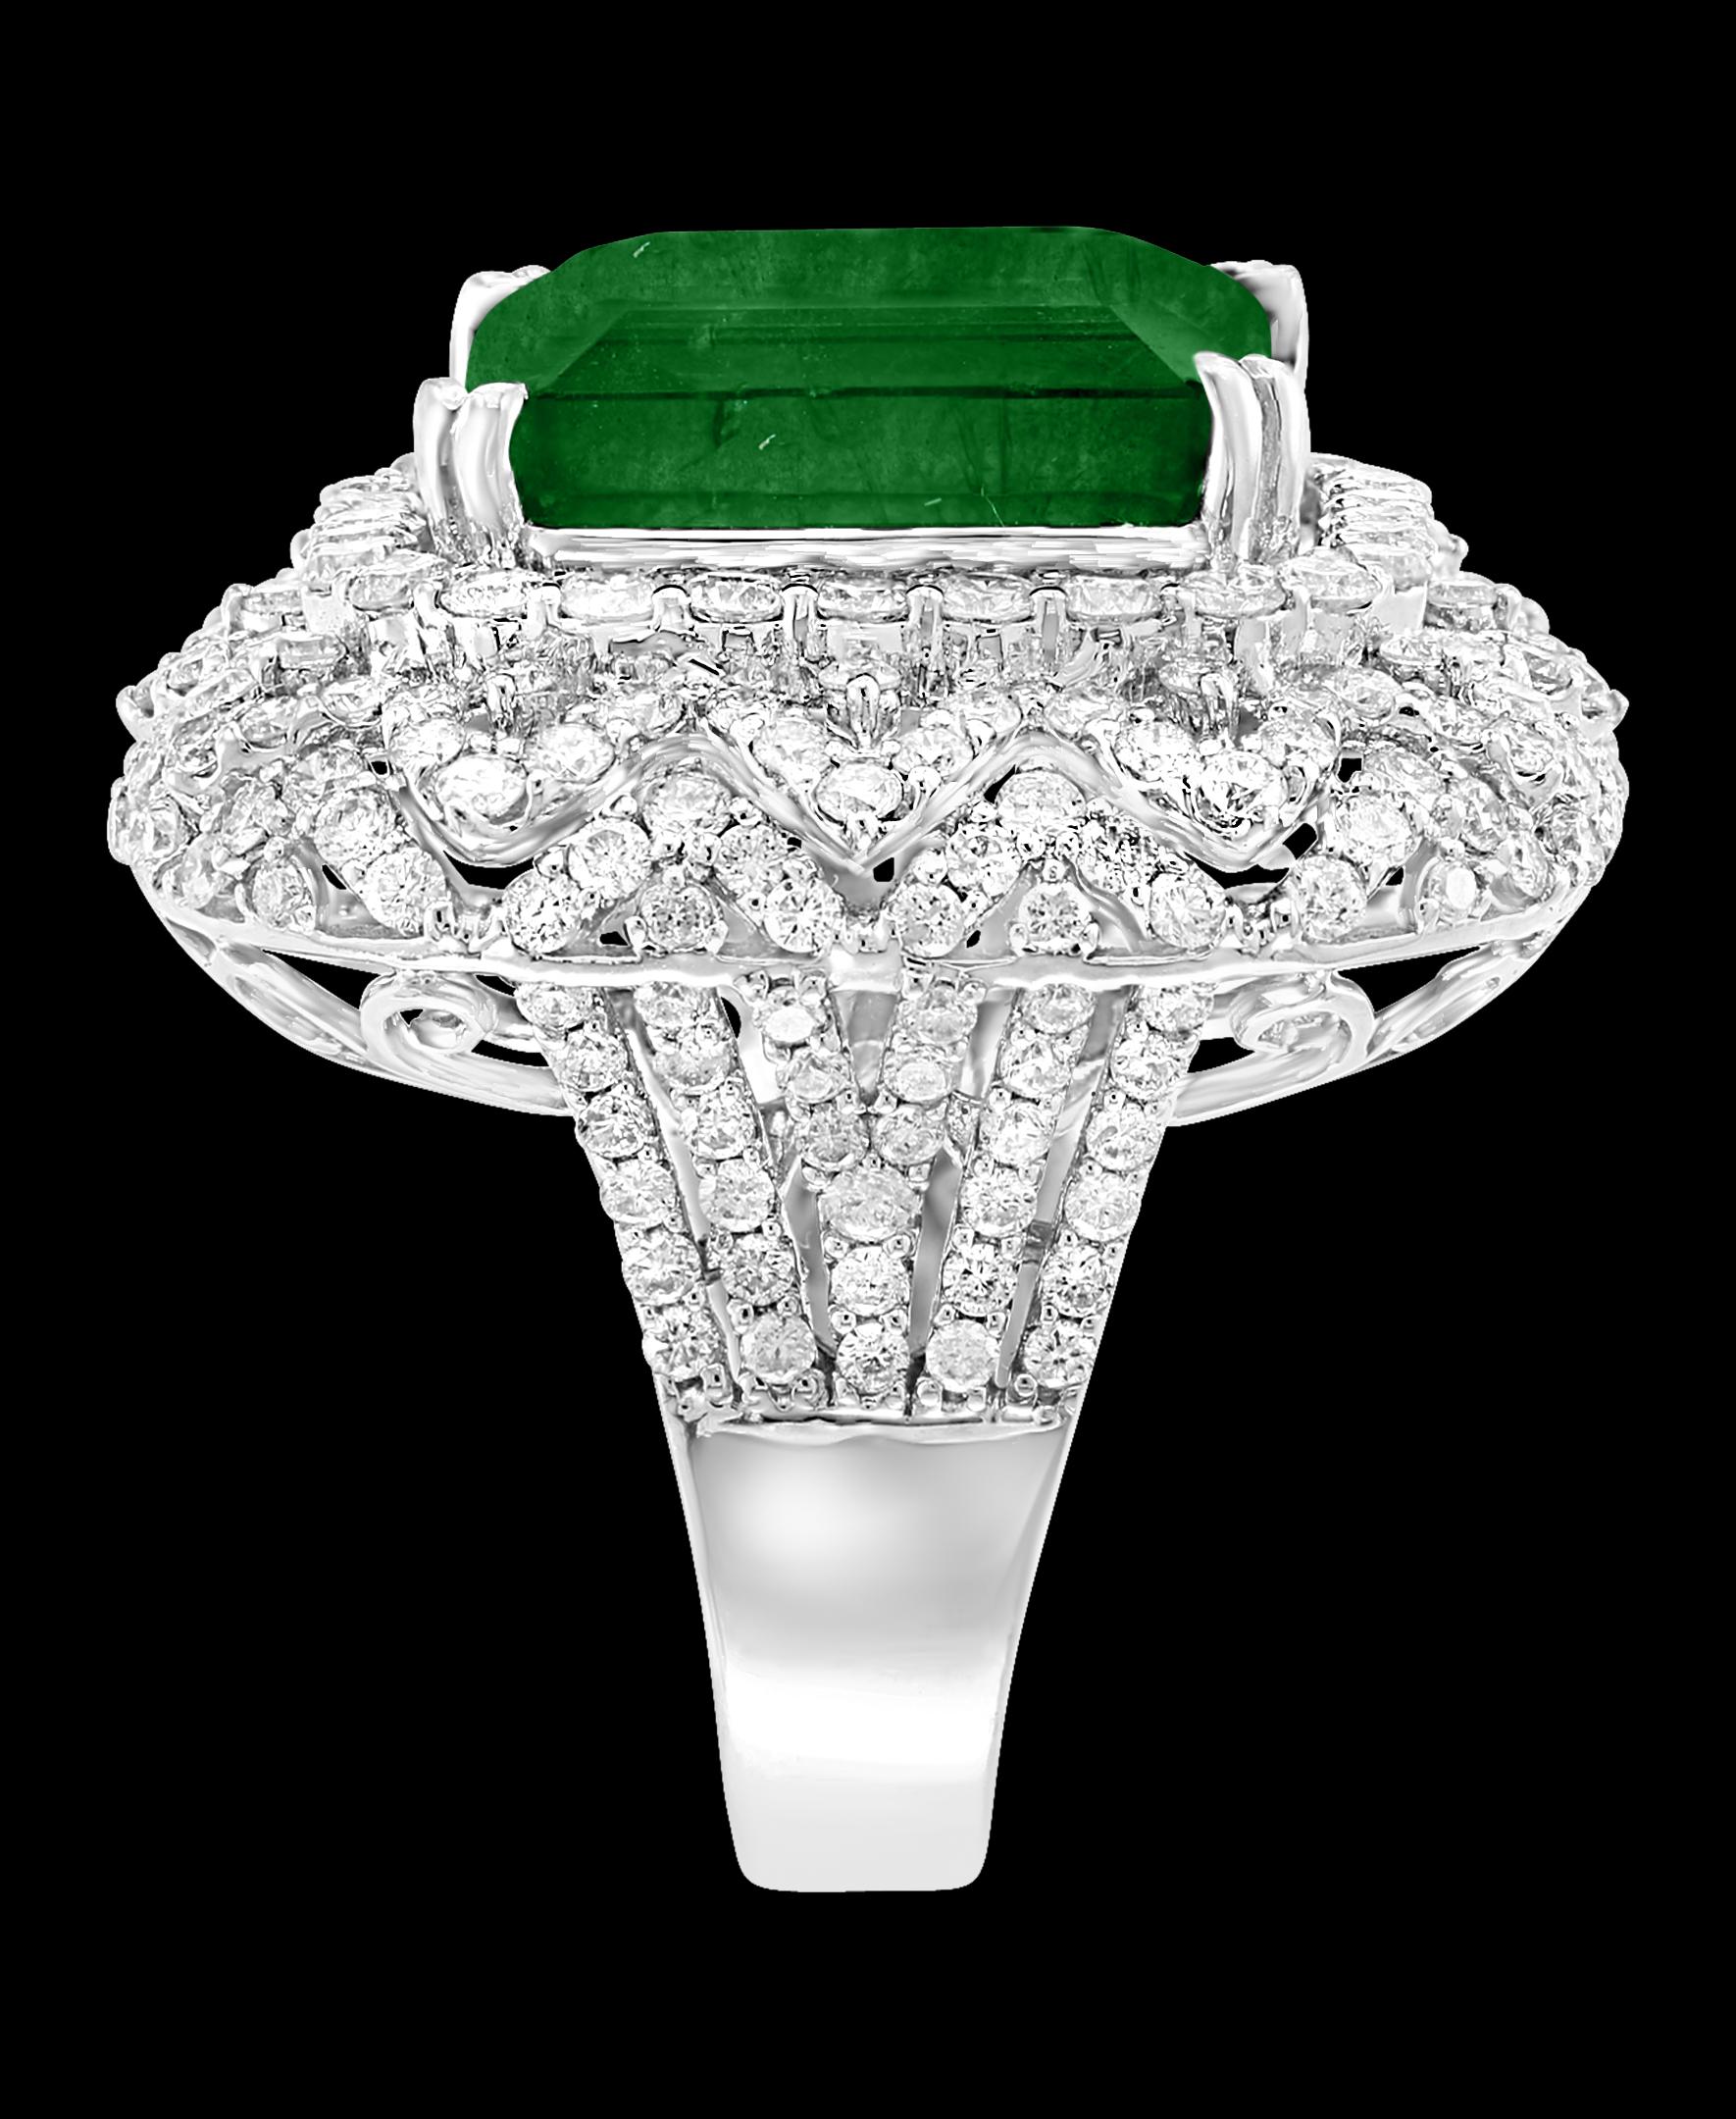  13.62 Carat  Emerald Cut  Emerald And 4.5 Carat Diamond 18K Gold Cocktail Ring  2